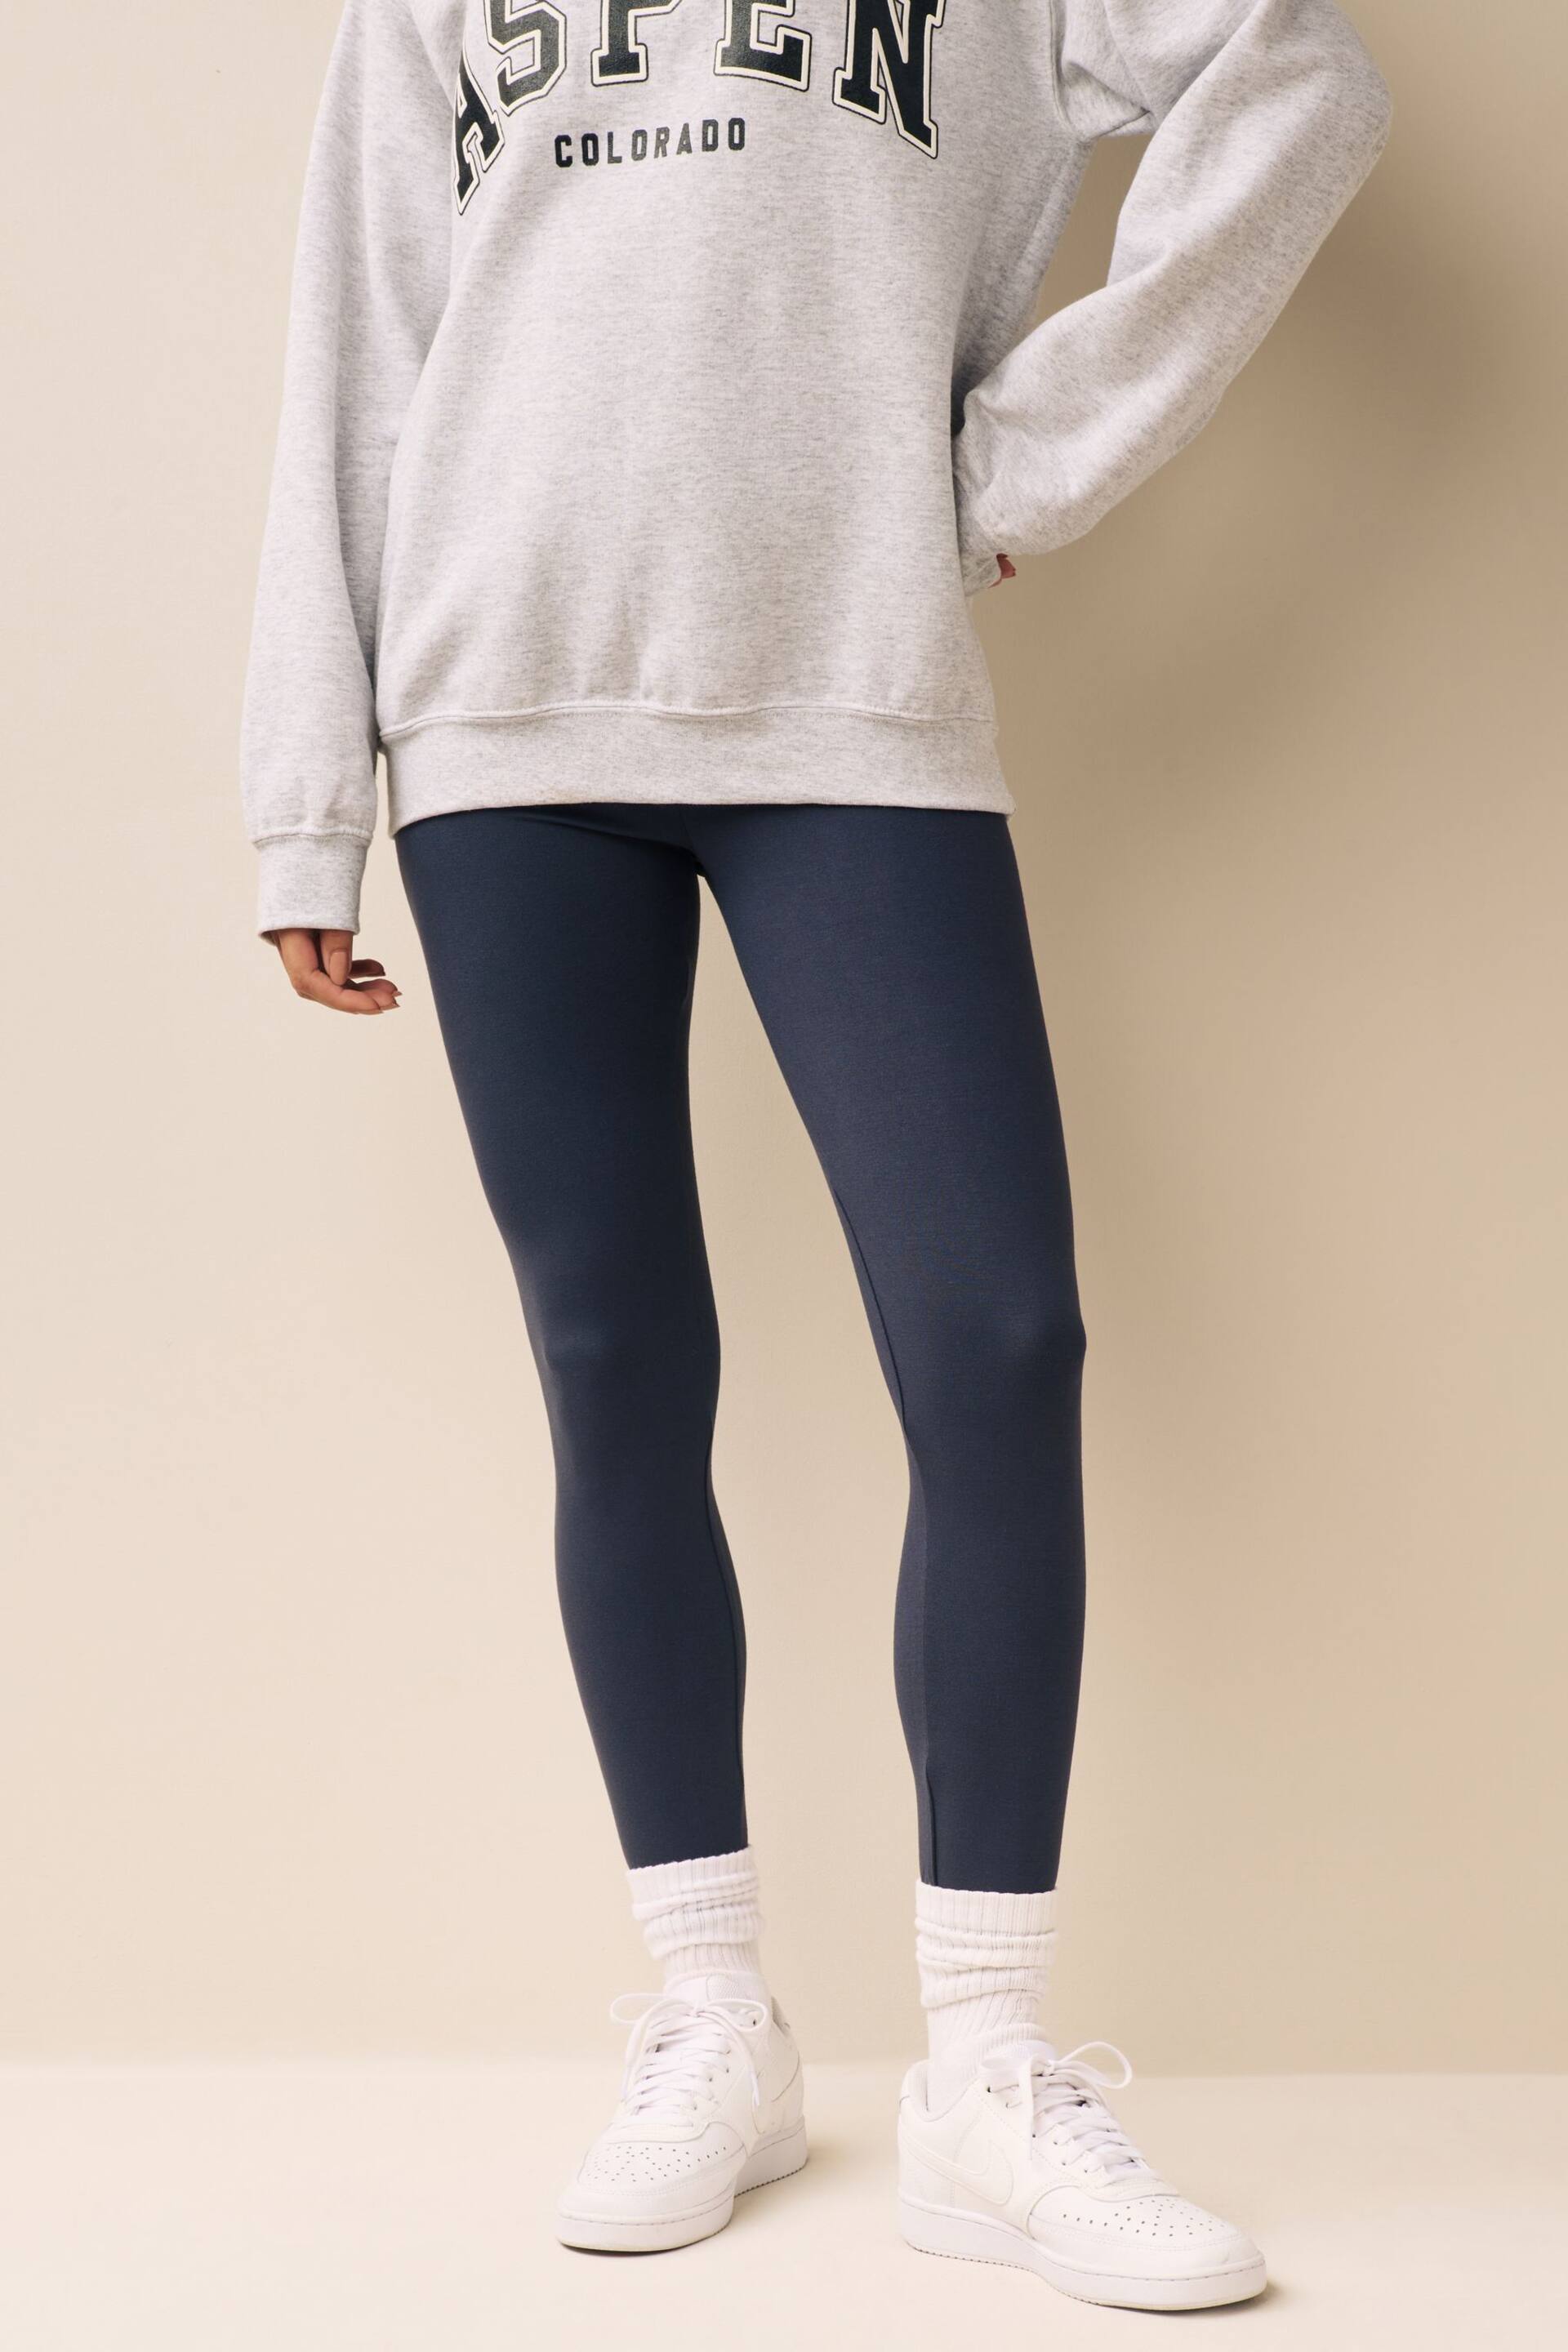 Grey Slate Full Length Leggings - Image 1 of 6